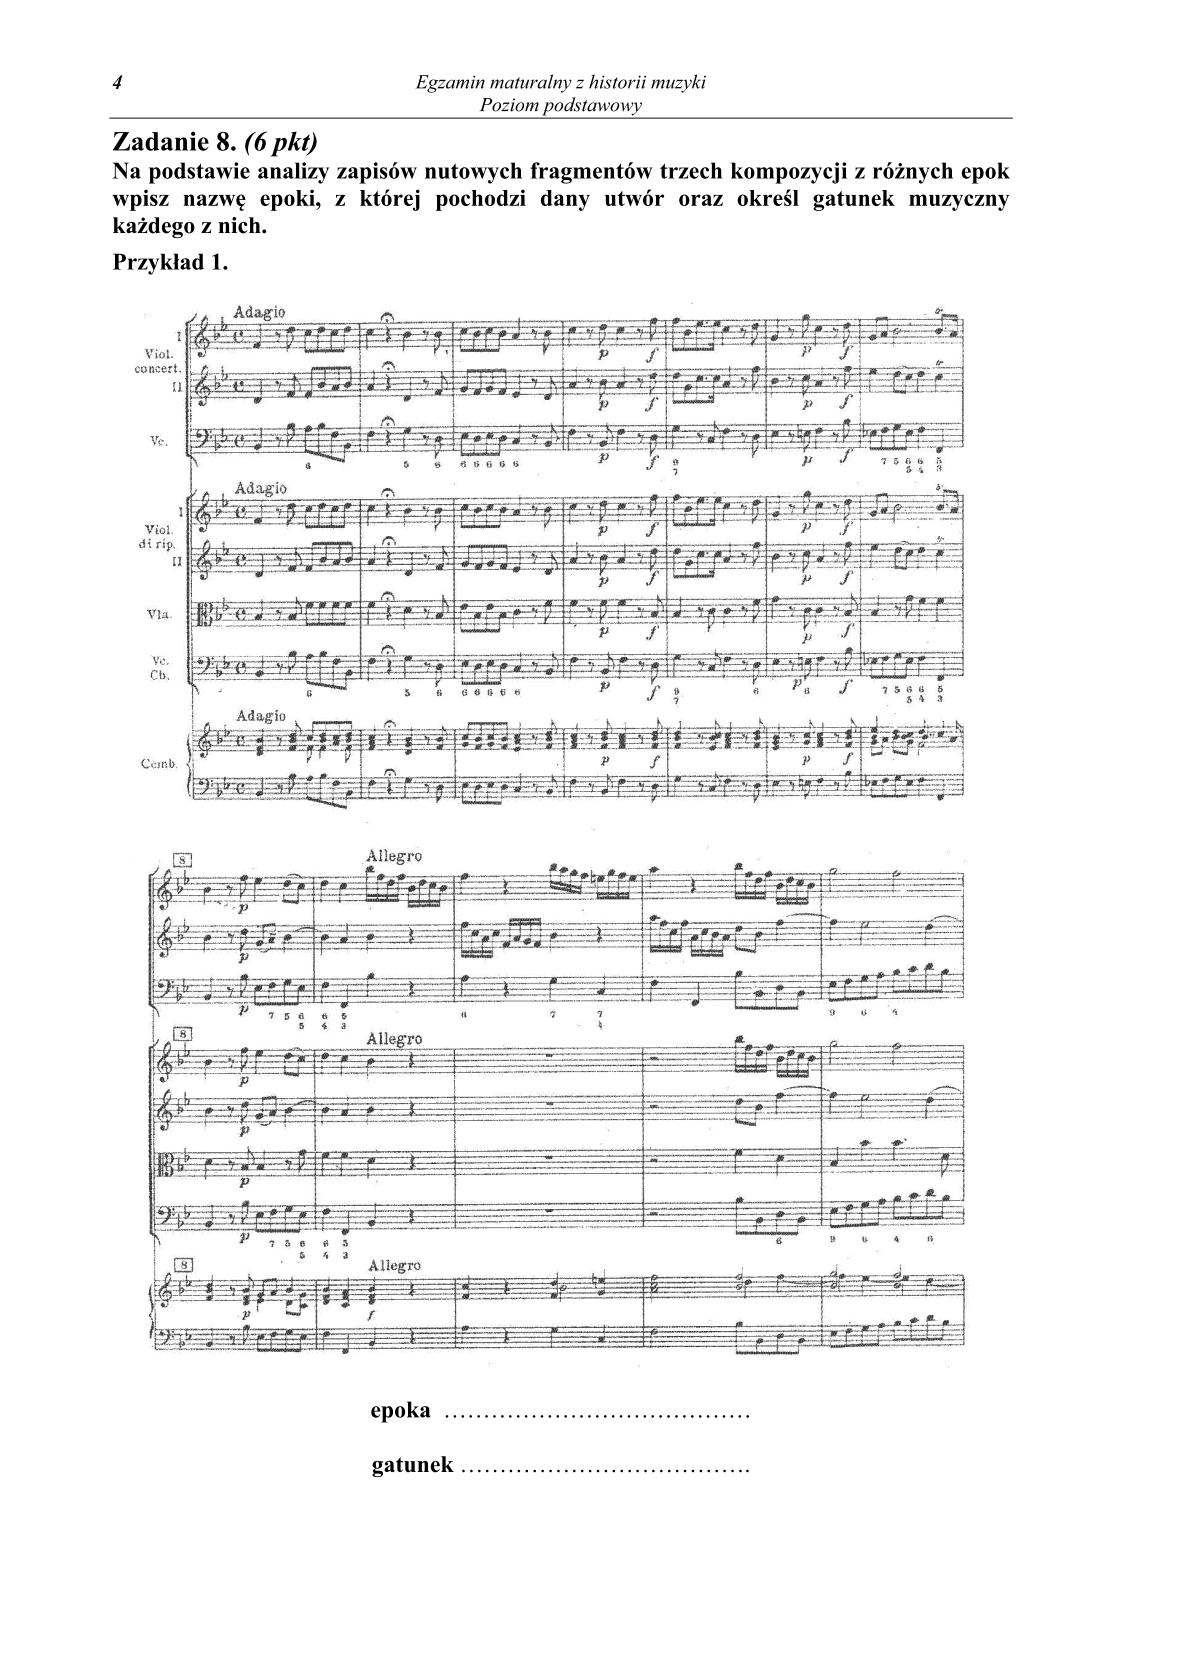 historia-muzyki-poziom-podstawowy-matura-2014-str.4